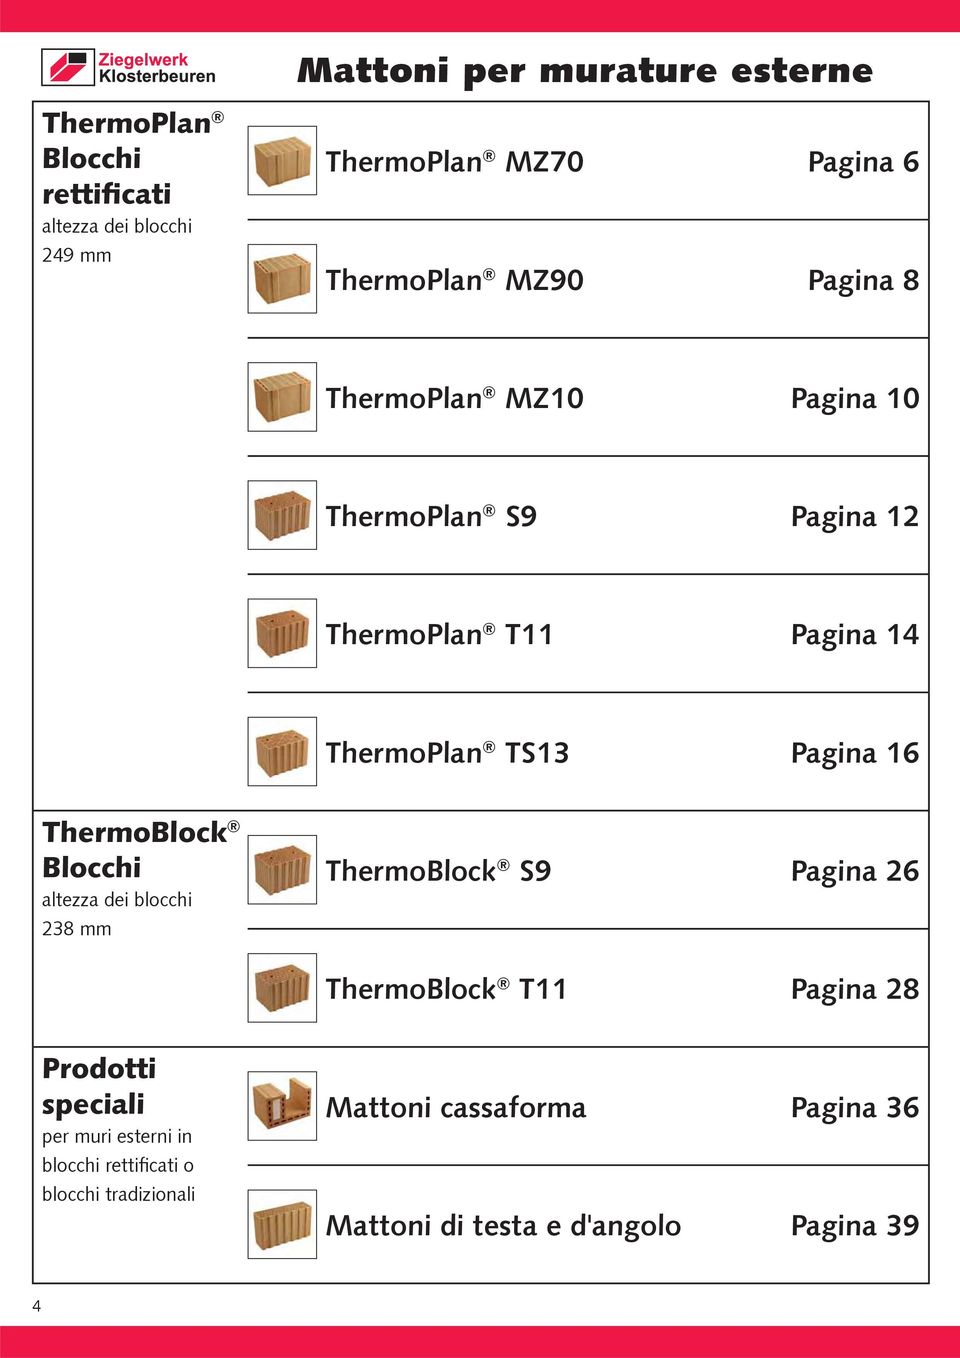 Pagina 16 ThermoBlock Blocchi altezza dei blocchi 238 mm ThermoBlock S9 Pagina 26 ThermoBlock T11 Pagina 28 Prodotti